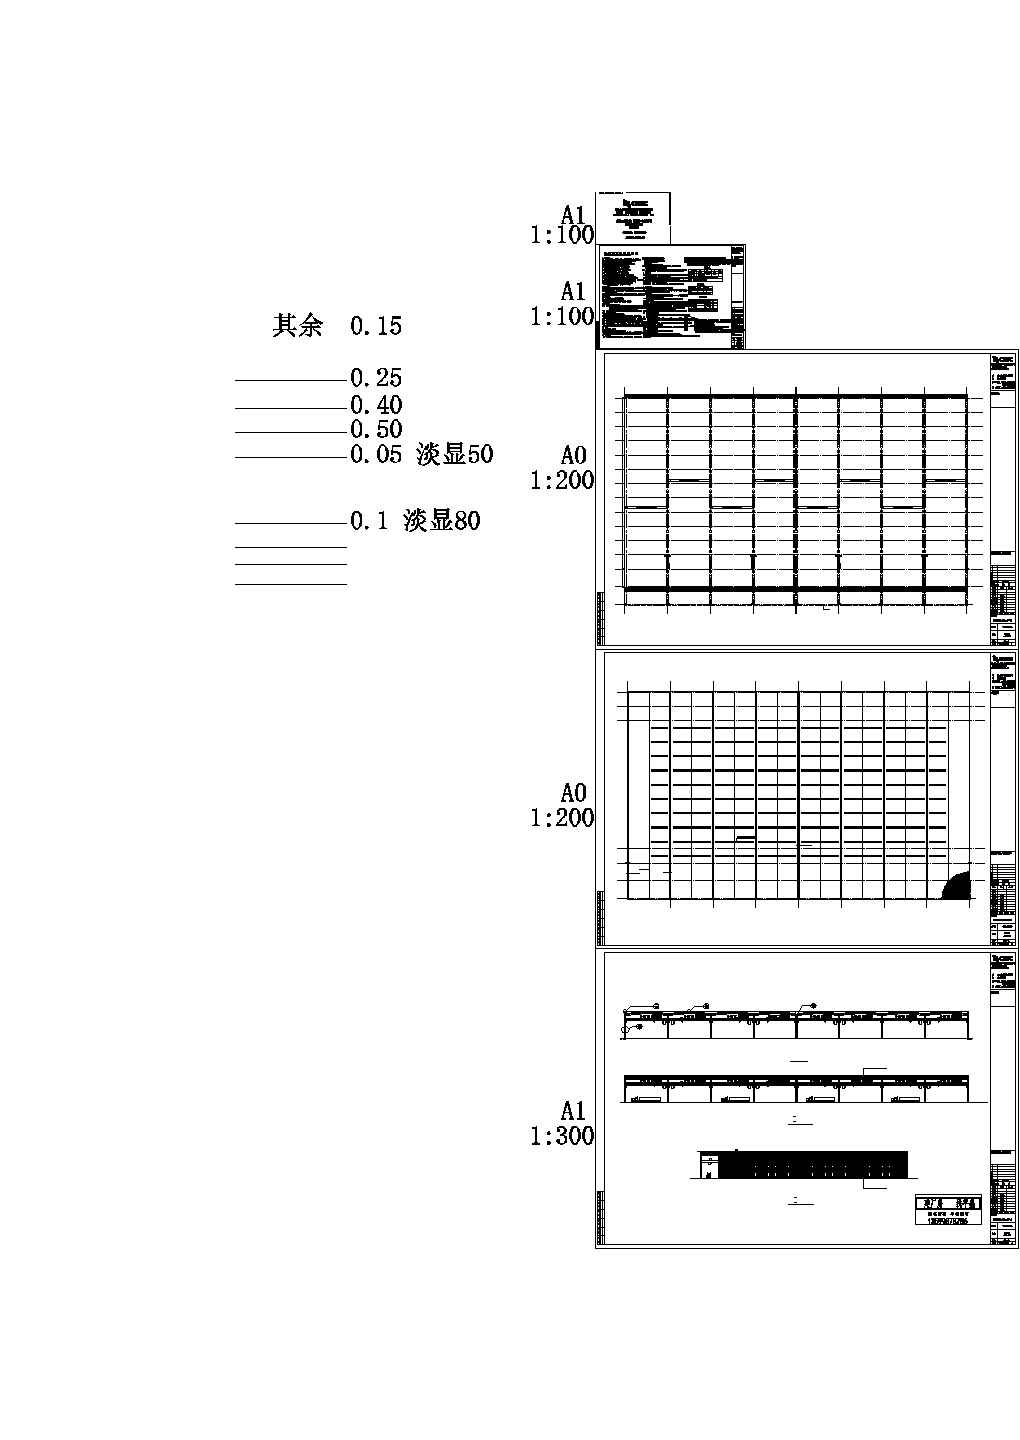 某现代标准型某公司钢铁物流A区仓储设计详细施工CAD图纸